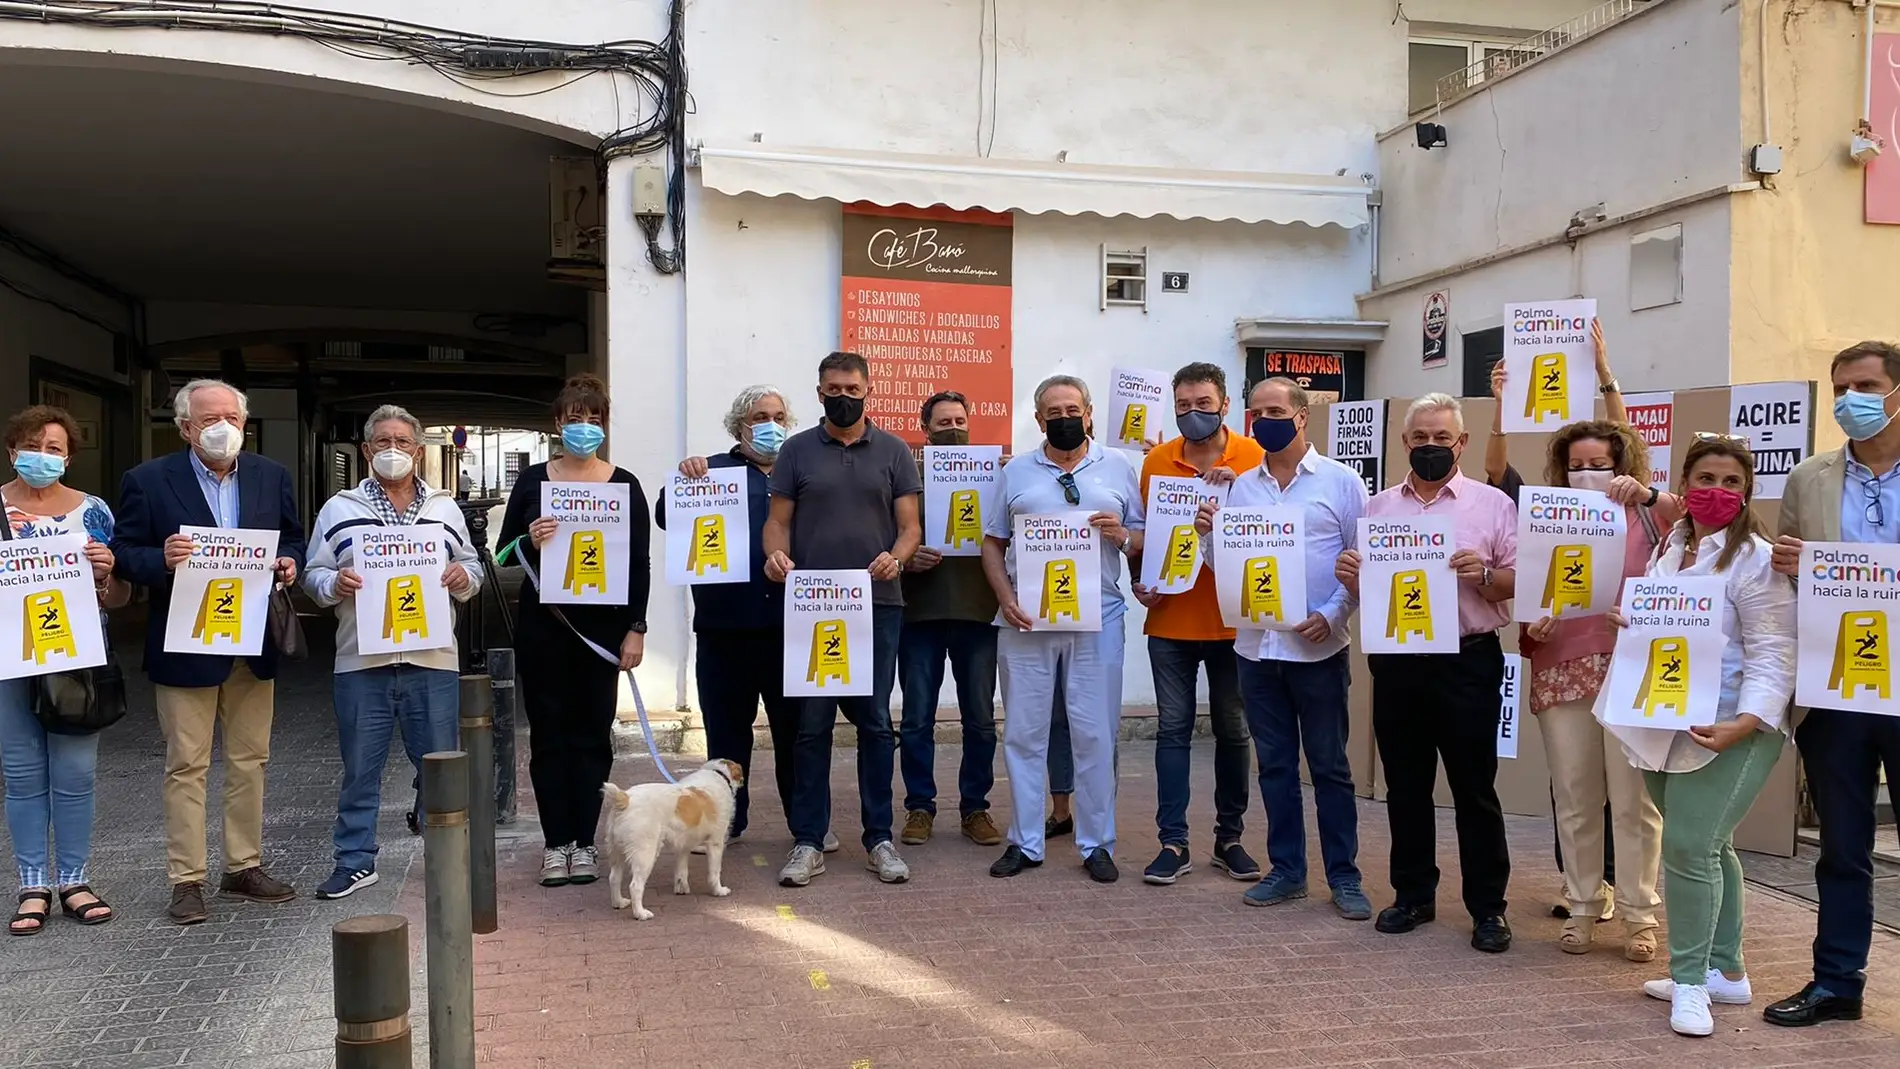 Empresas, comercios y vecinos inician una pegada de carteles contra las políticas de movilidad del Ajuntament de Palma